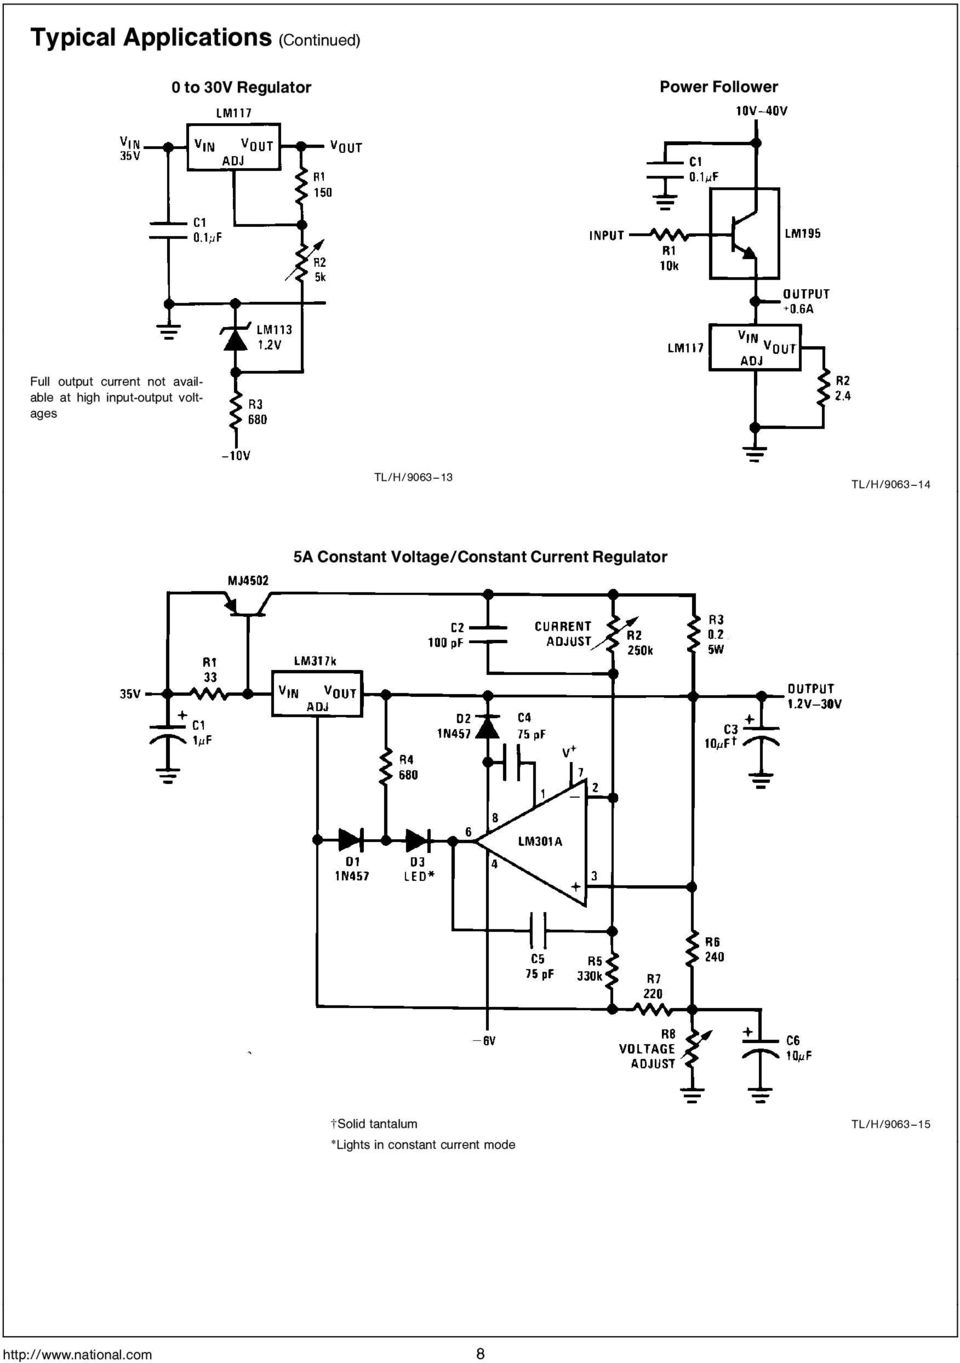 TL H 9063 14 5A Constant Voltage Constant Current Regulator Solid